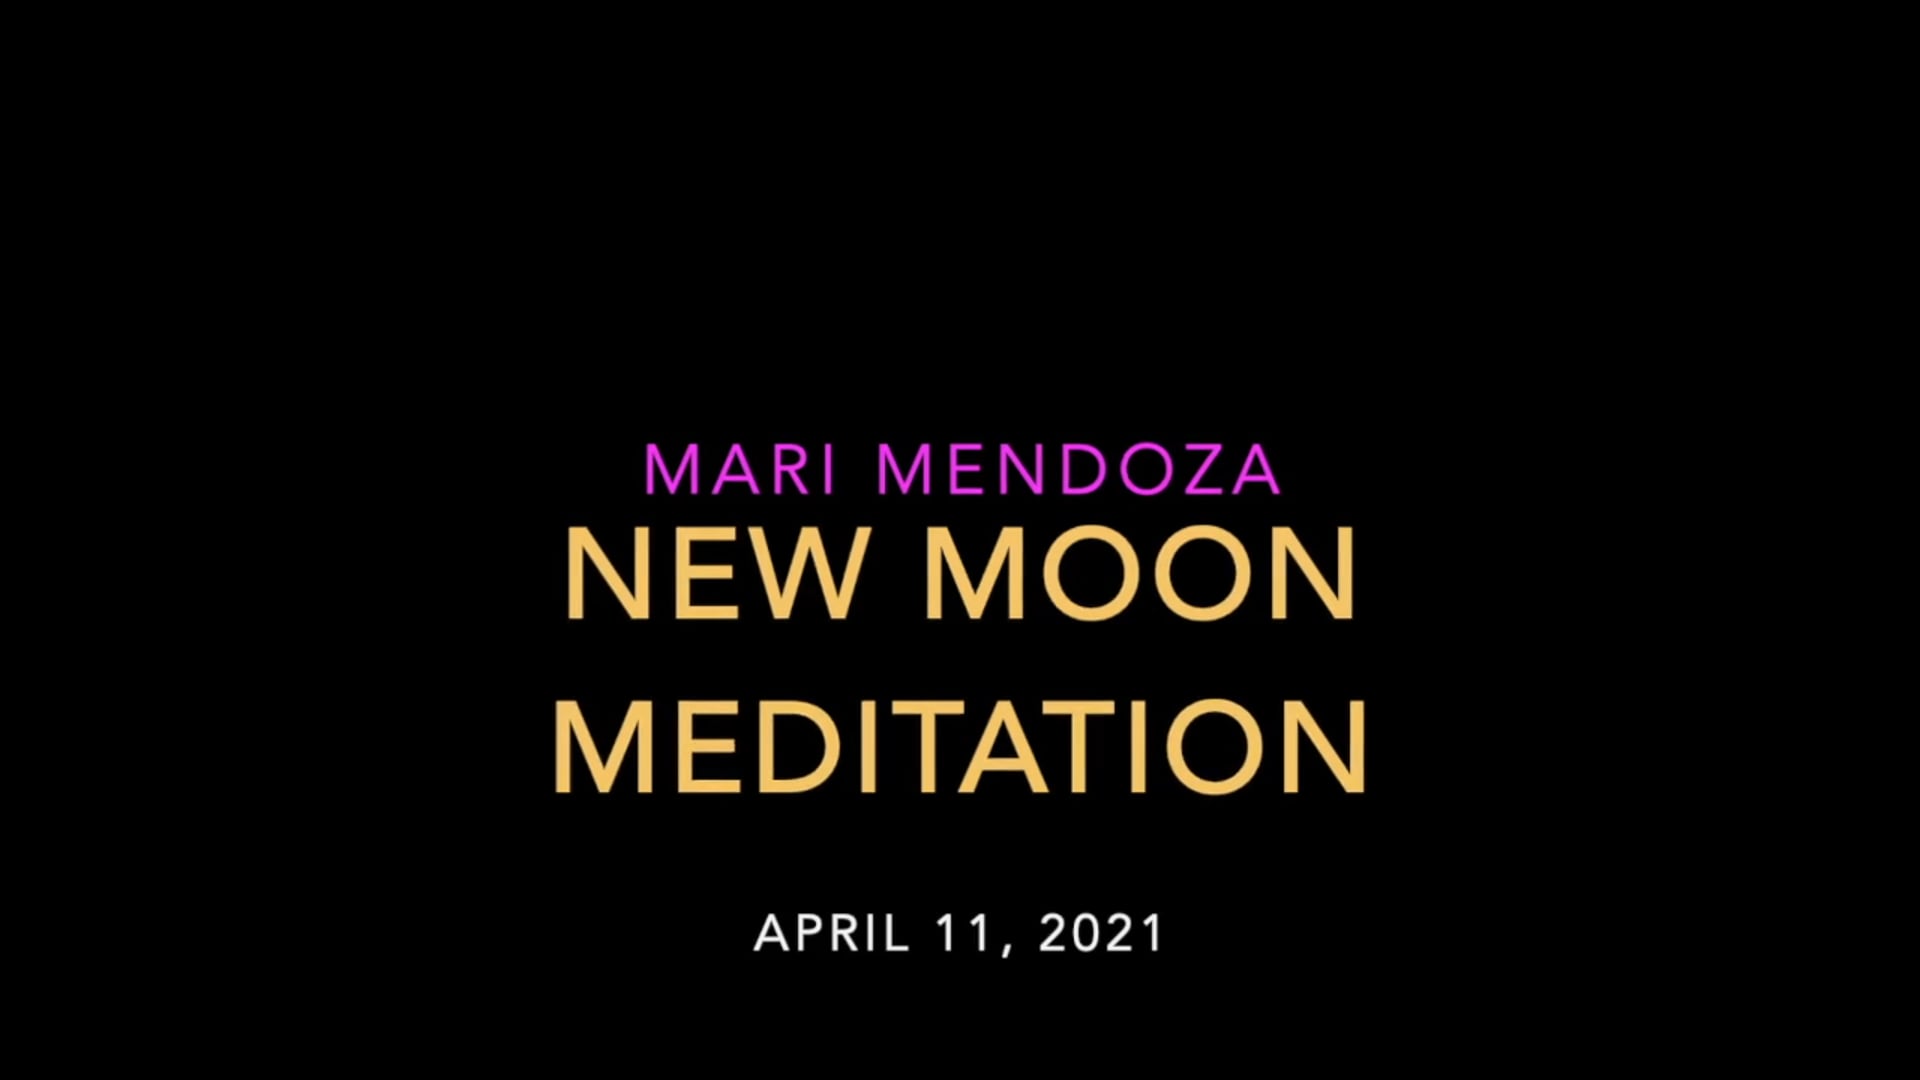 New Moon Meditation - April 11, 2021